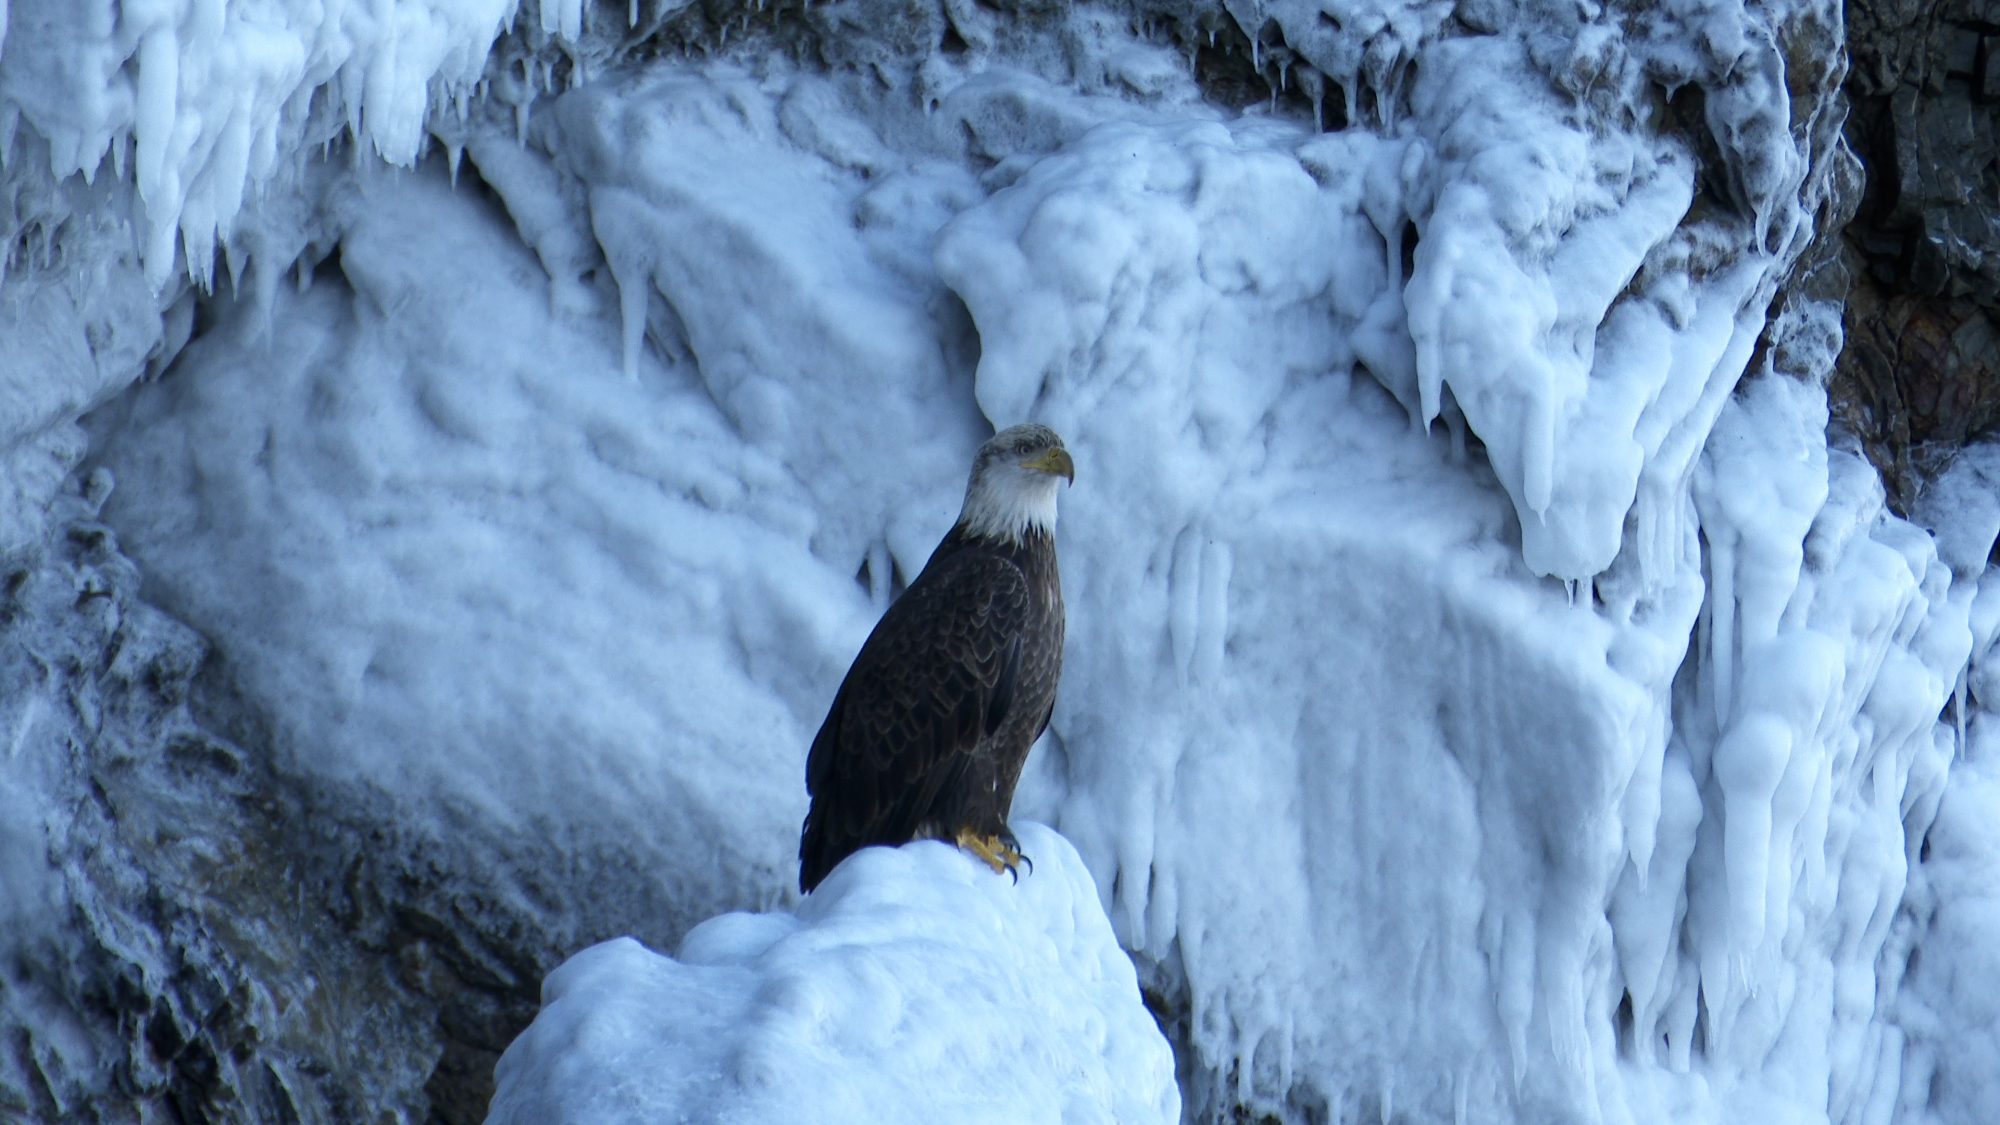 Bald Eagles on icy rocks – Alaska 2020